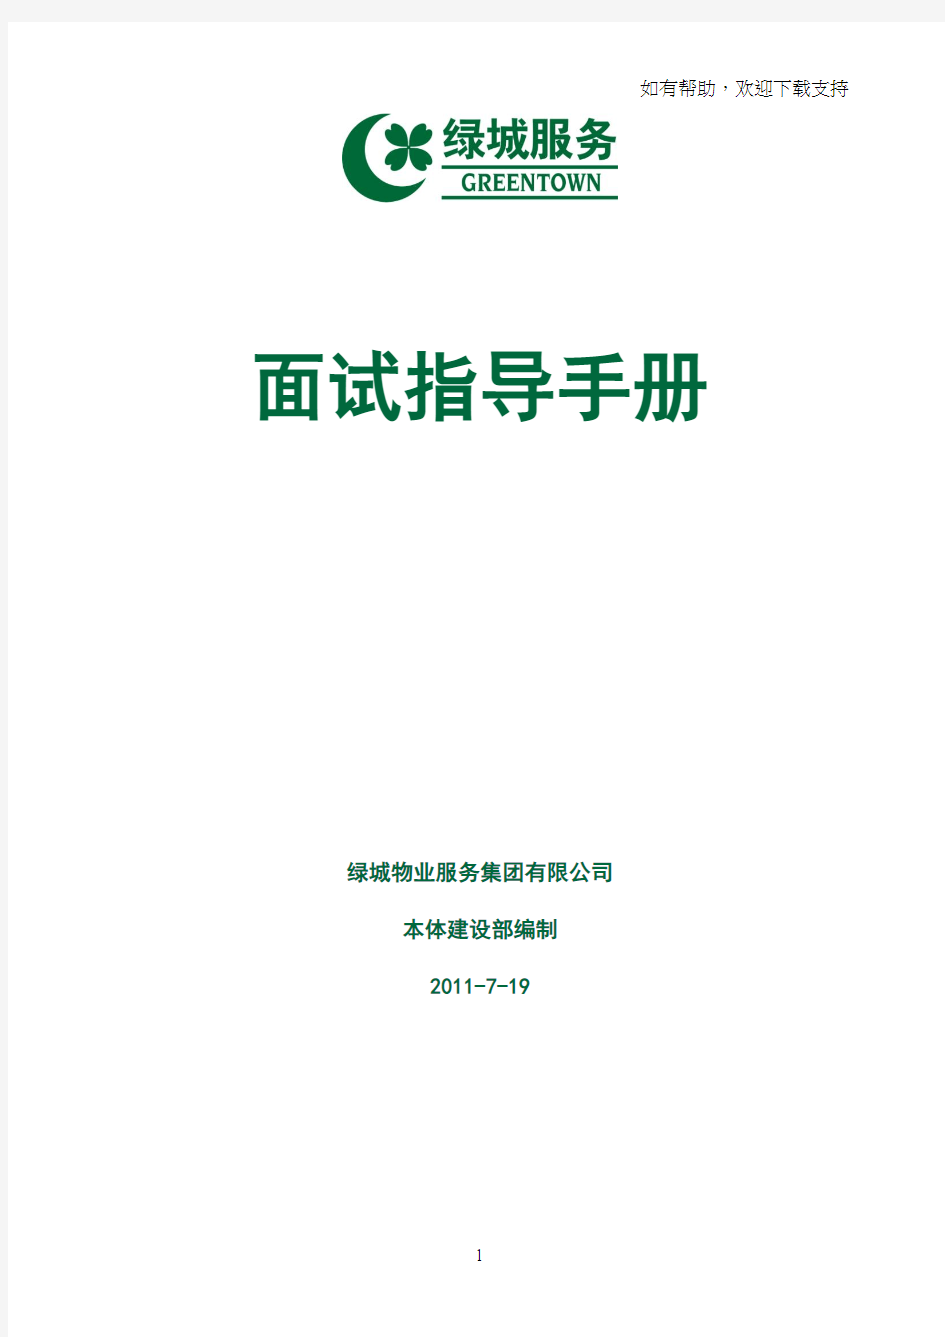 浙江绿城物业集服务集团(面试指导手册)